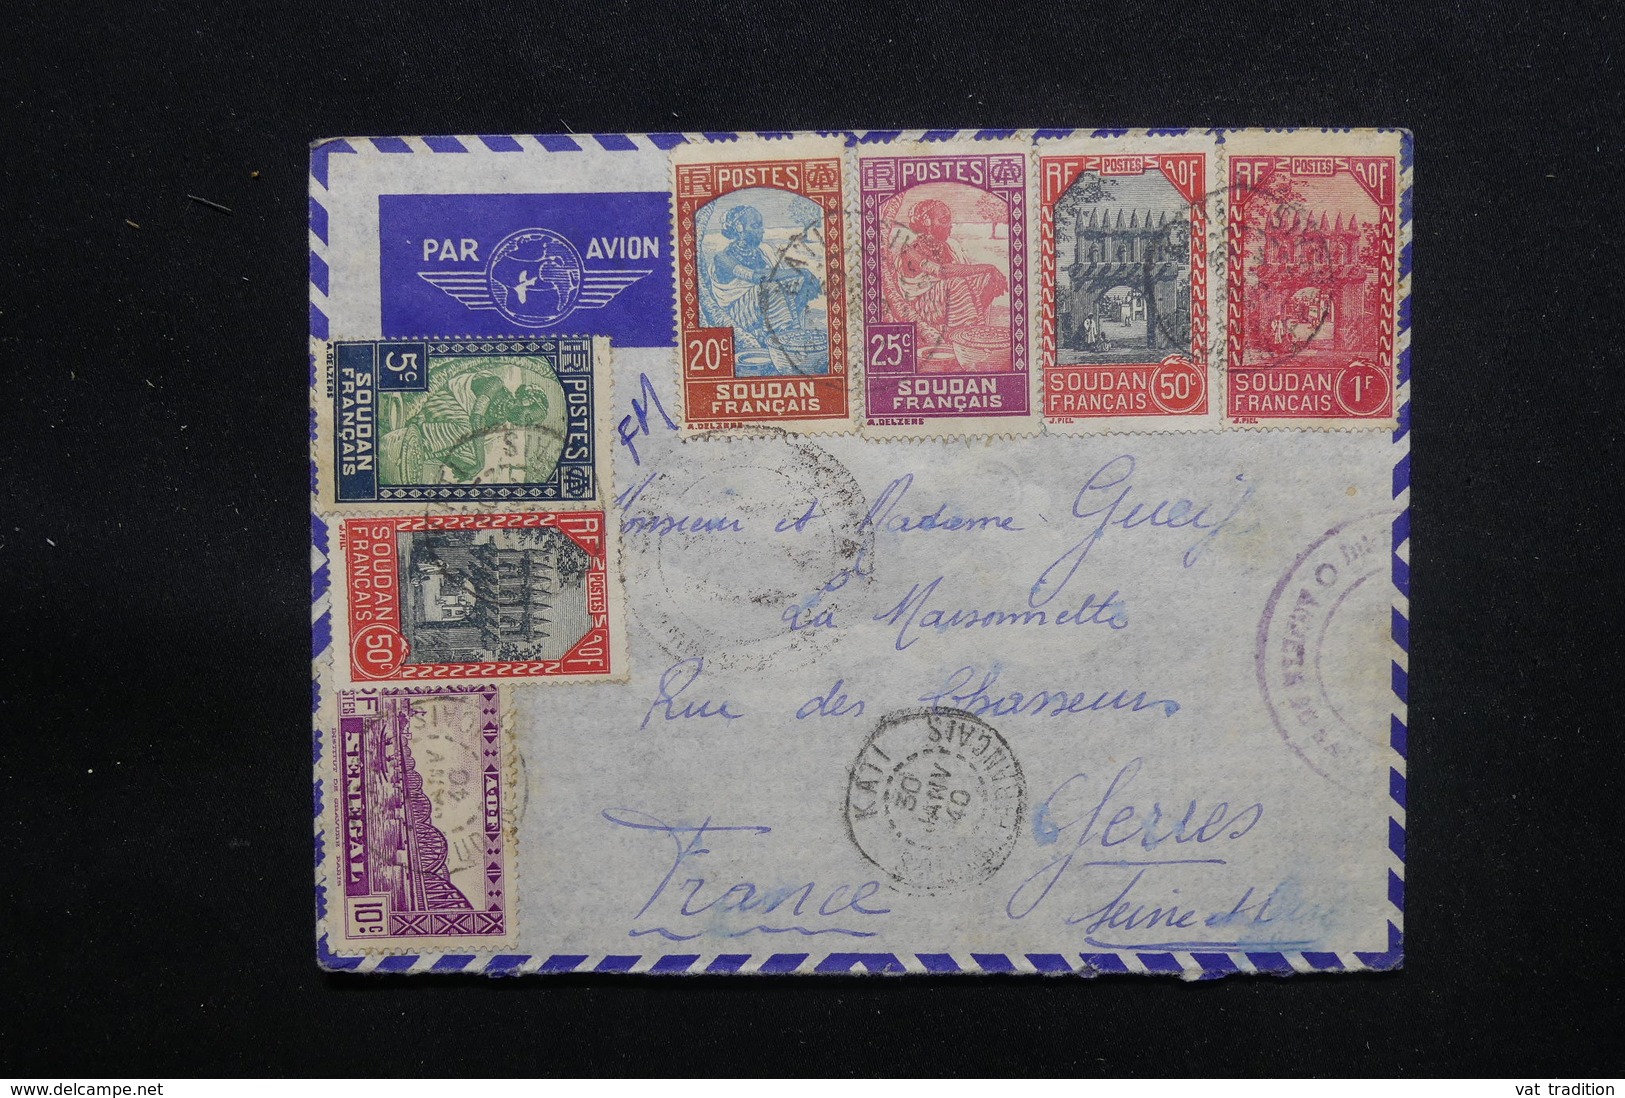 SOUDAN - Enveloppe De Kati Pour La France En 1940 Avec Contrôle Postal, Affranchissement Plaisant - L 48611 - Covers & Documents